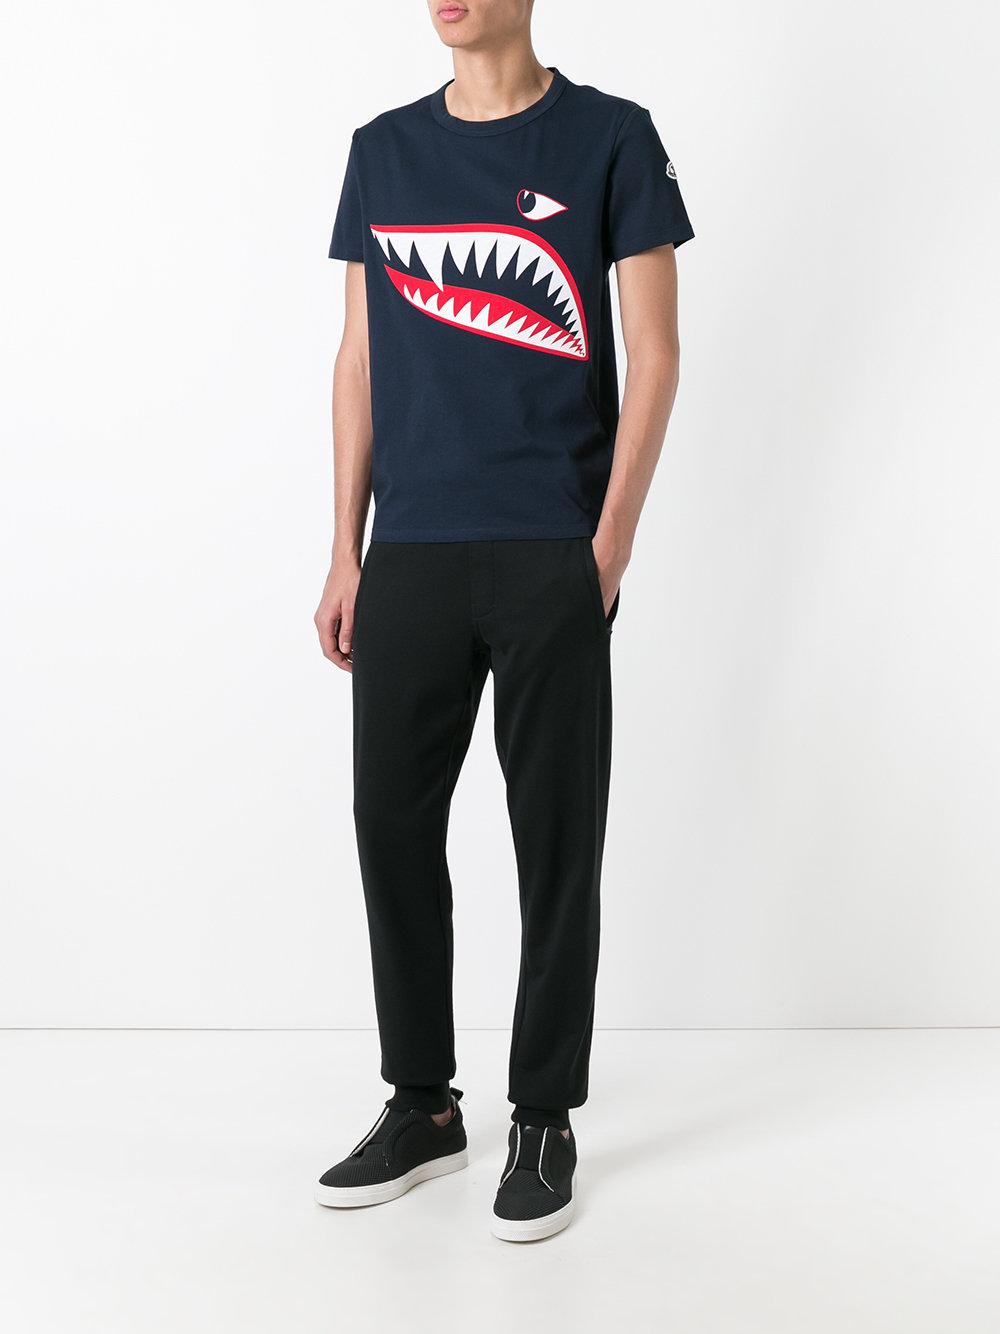 moncler shark t shirt